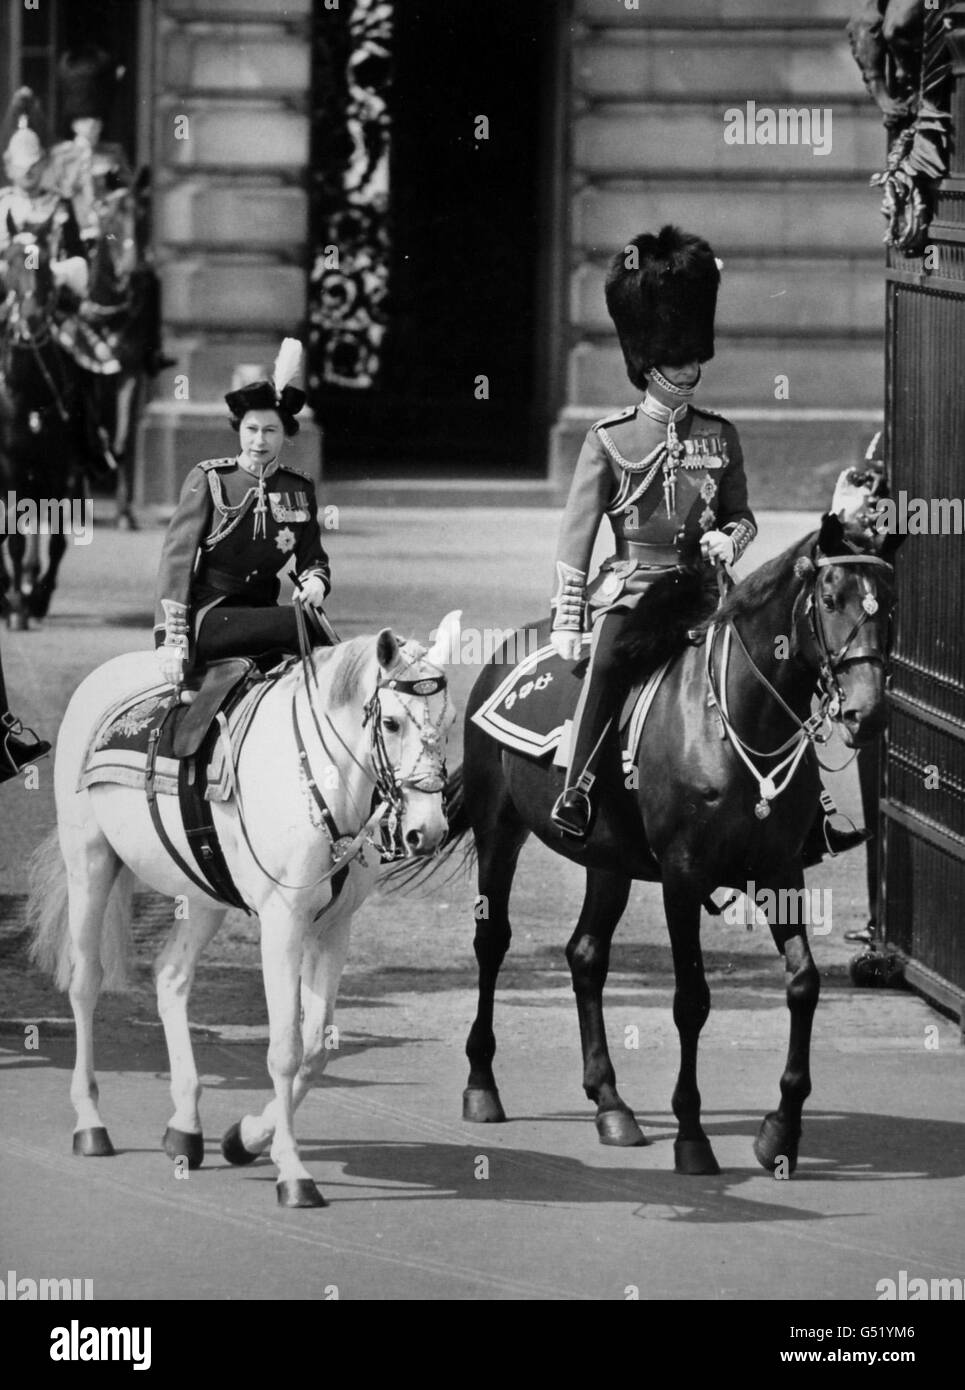 La reine Elizabeth II, montée sur un cheval de police gris nommé Doctor, part de Buckingham Palace avec le duc d'Édimbourg pour la cérémonie de Trooping the Color sur Horse Guards Parade Banque D'Images